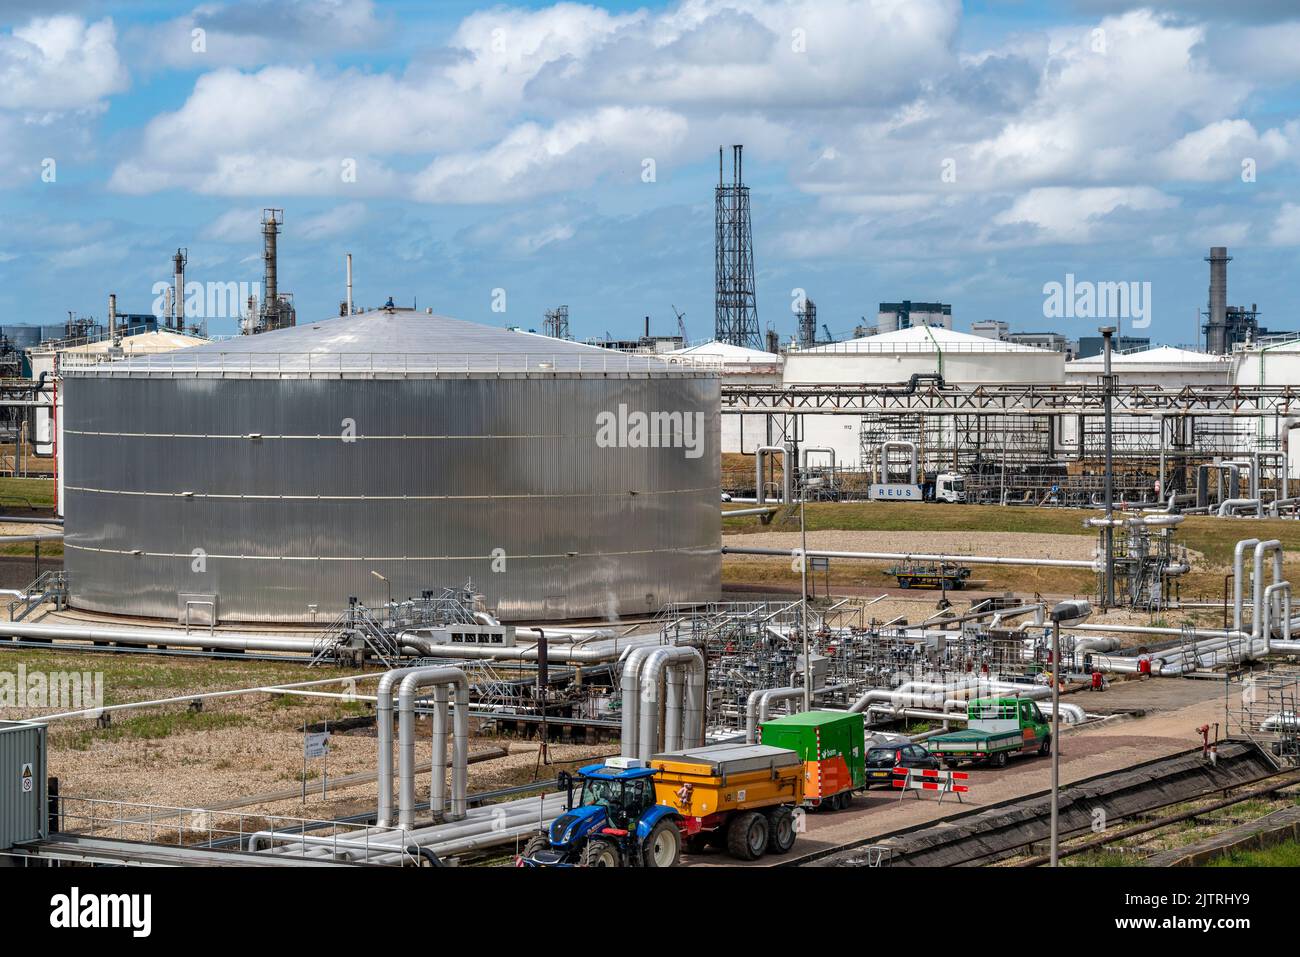 La raffineria Shell Pernis, la più grande raffineria in Europa, impianti di produzione, logistica e serbatoi, produzione di vari prodotti petroliferi, come la benzina Foto Stock